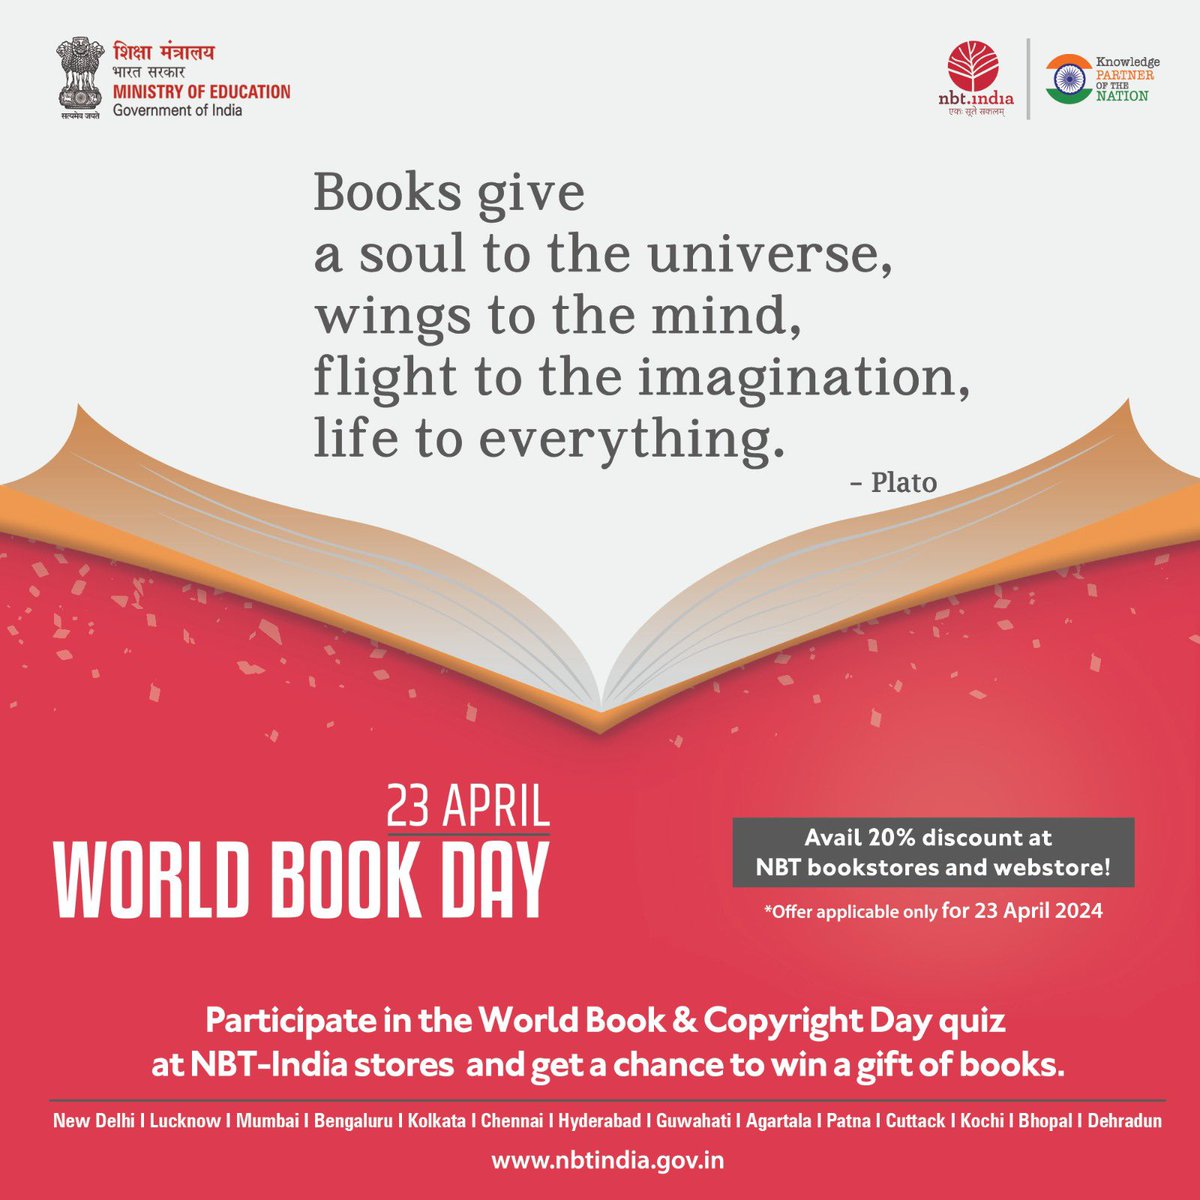 किताबें कुछ कहना चाहती हैं।आपके पास रहना चाहती हैं॥

आइए, विश्व पुस्तक एवं कॉपीराइट दिवस (23 अप्रैल) पर जुड़ें किताबों की रोमांचक दुनिया से नेशनल बुक ट्रस्ट, इंडिया के साथ! 
#WorldBookandCopyrightDay